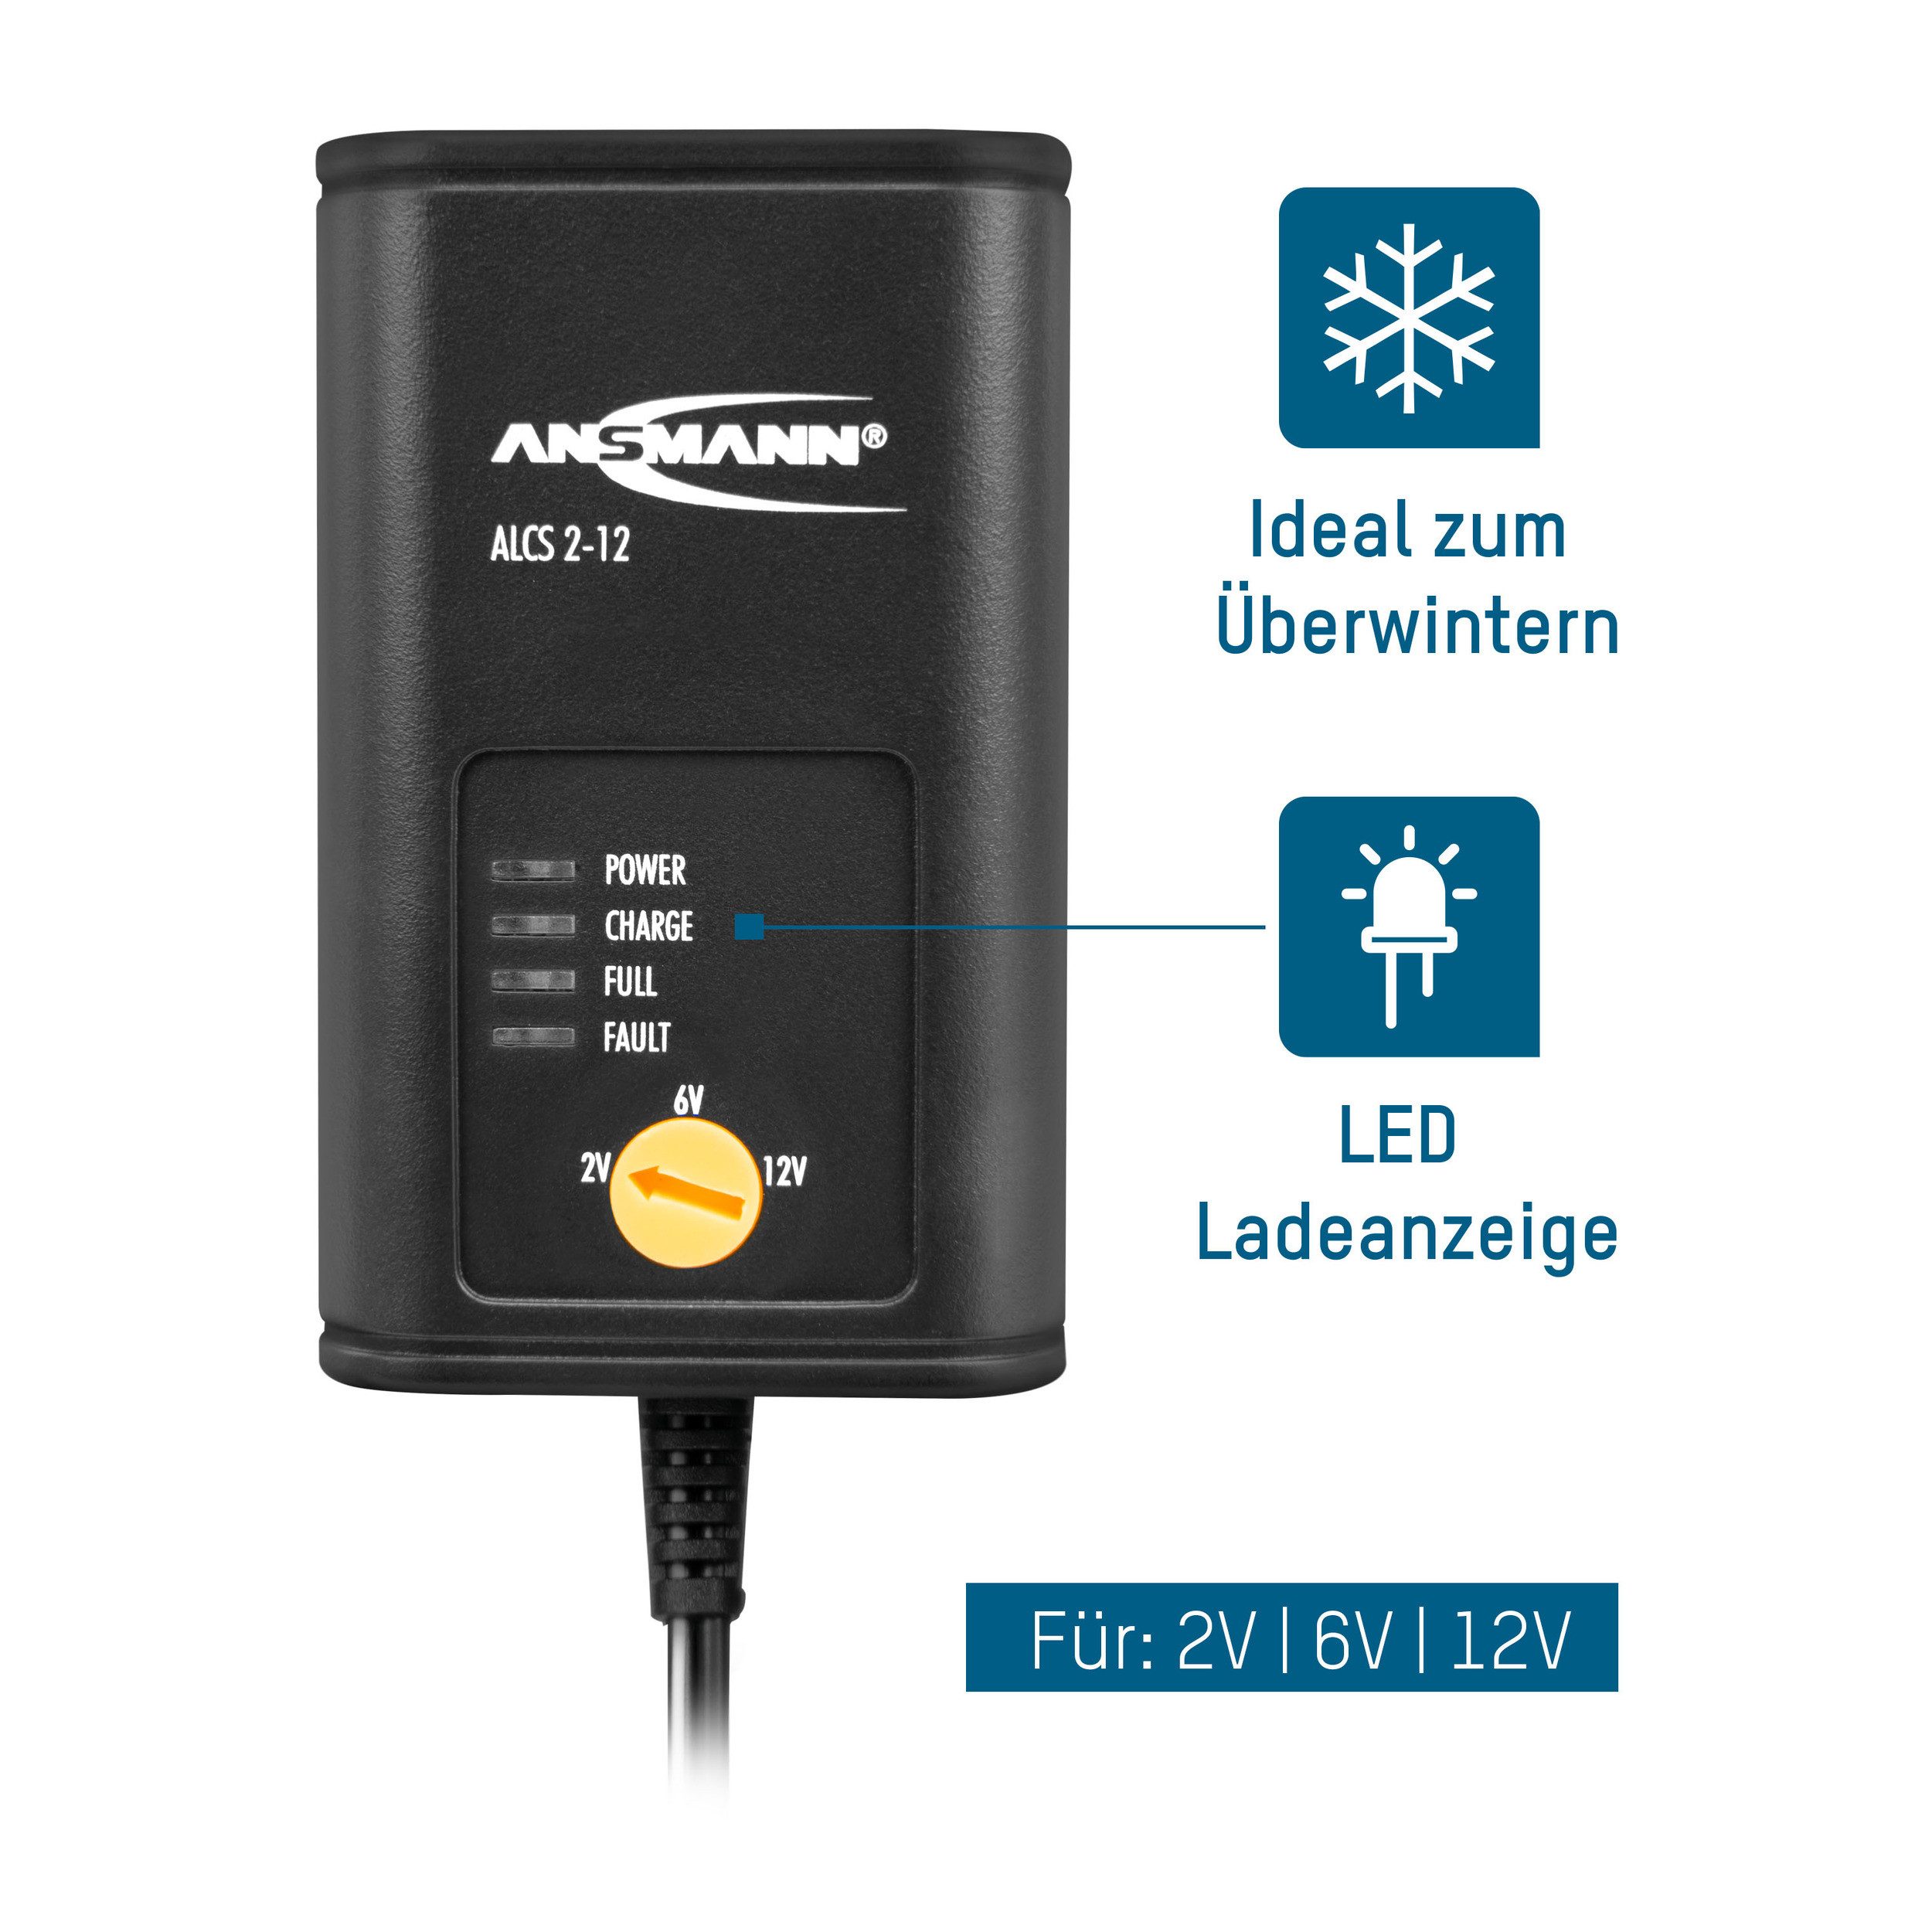 ANSMANN AG Batterie Ladegerät 2V/6V/12V Universal-Ladegerät